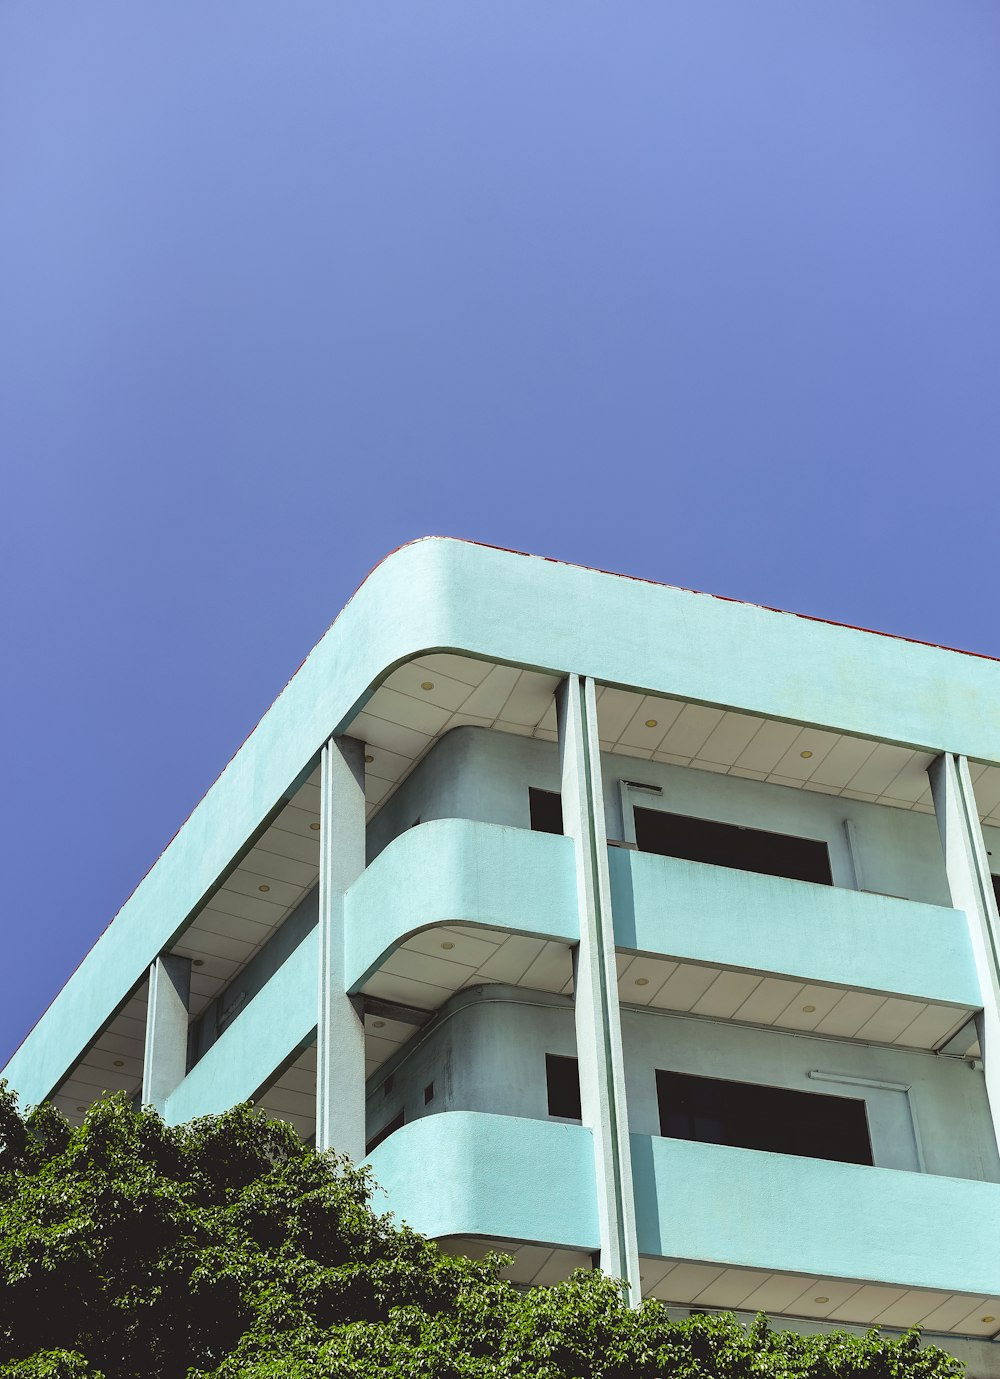 Photographie en contre-plongée d’un bâtiment turquoise